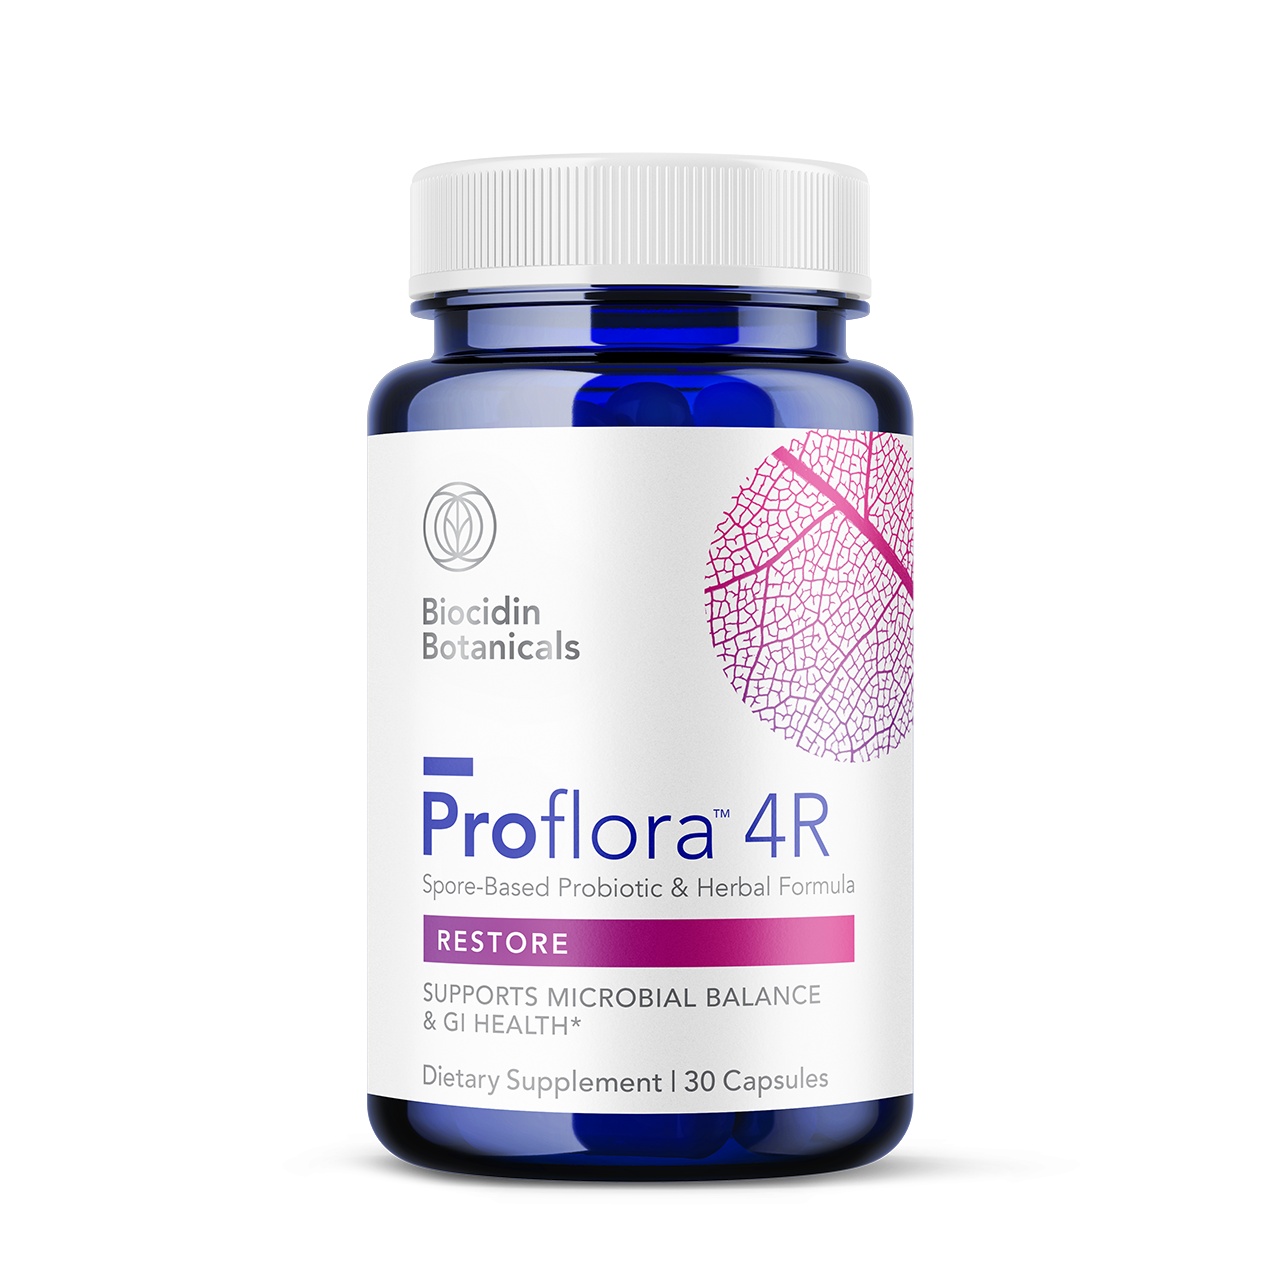 Proflora 4R Restorative Probiotic - 30 Capsules | Biocidin Botanicals